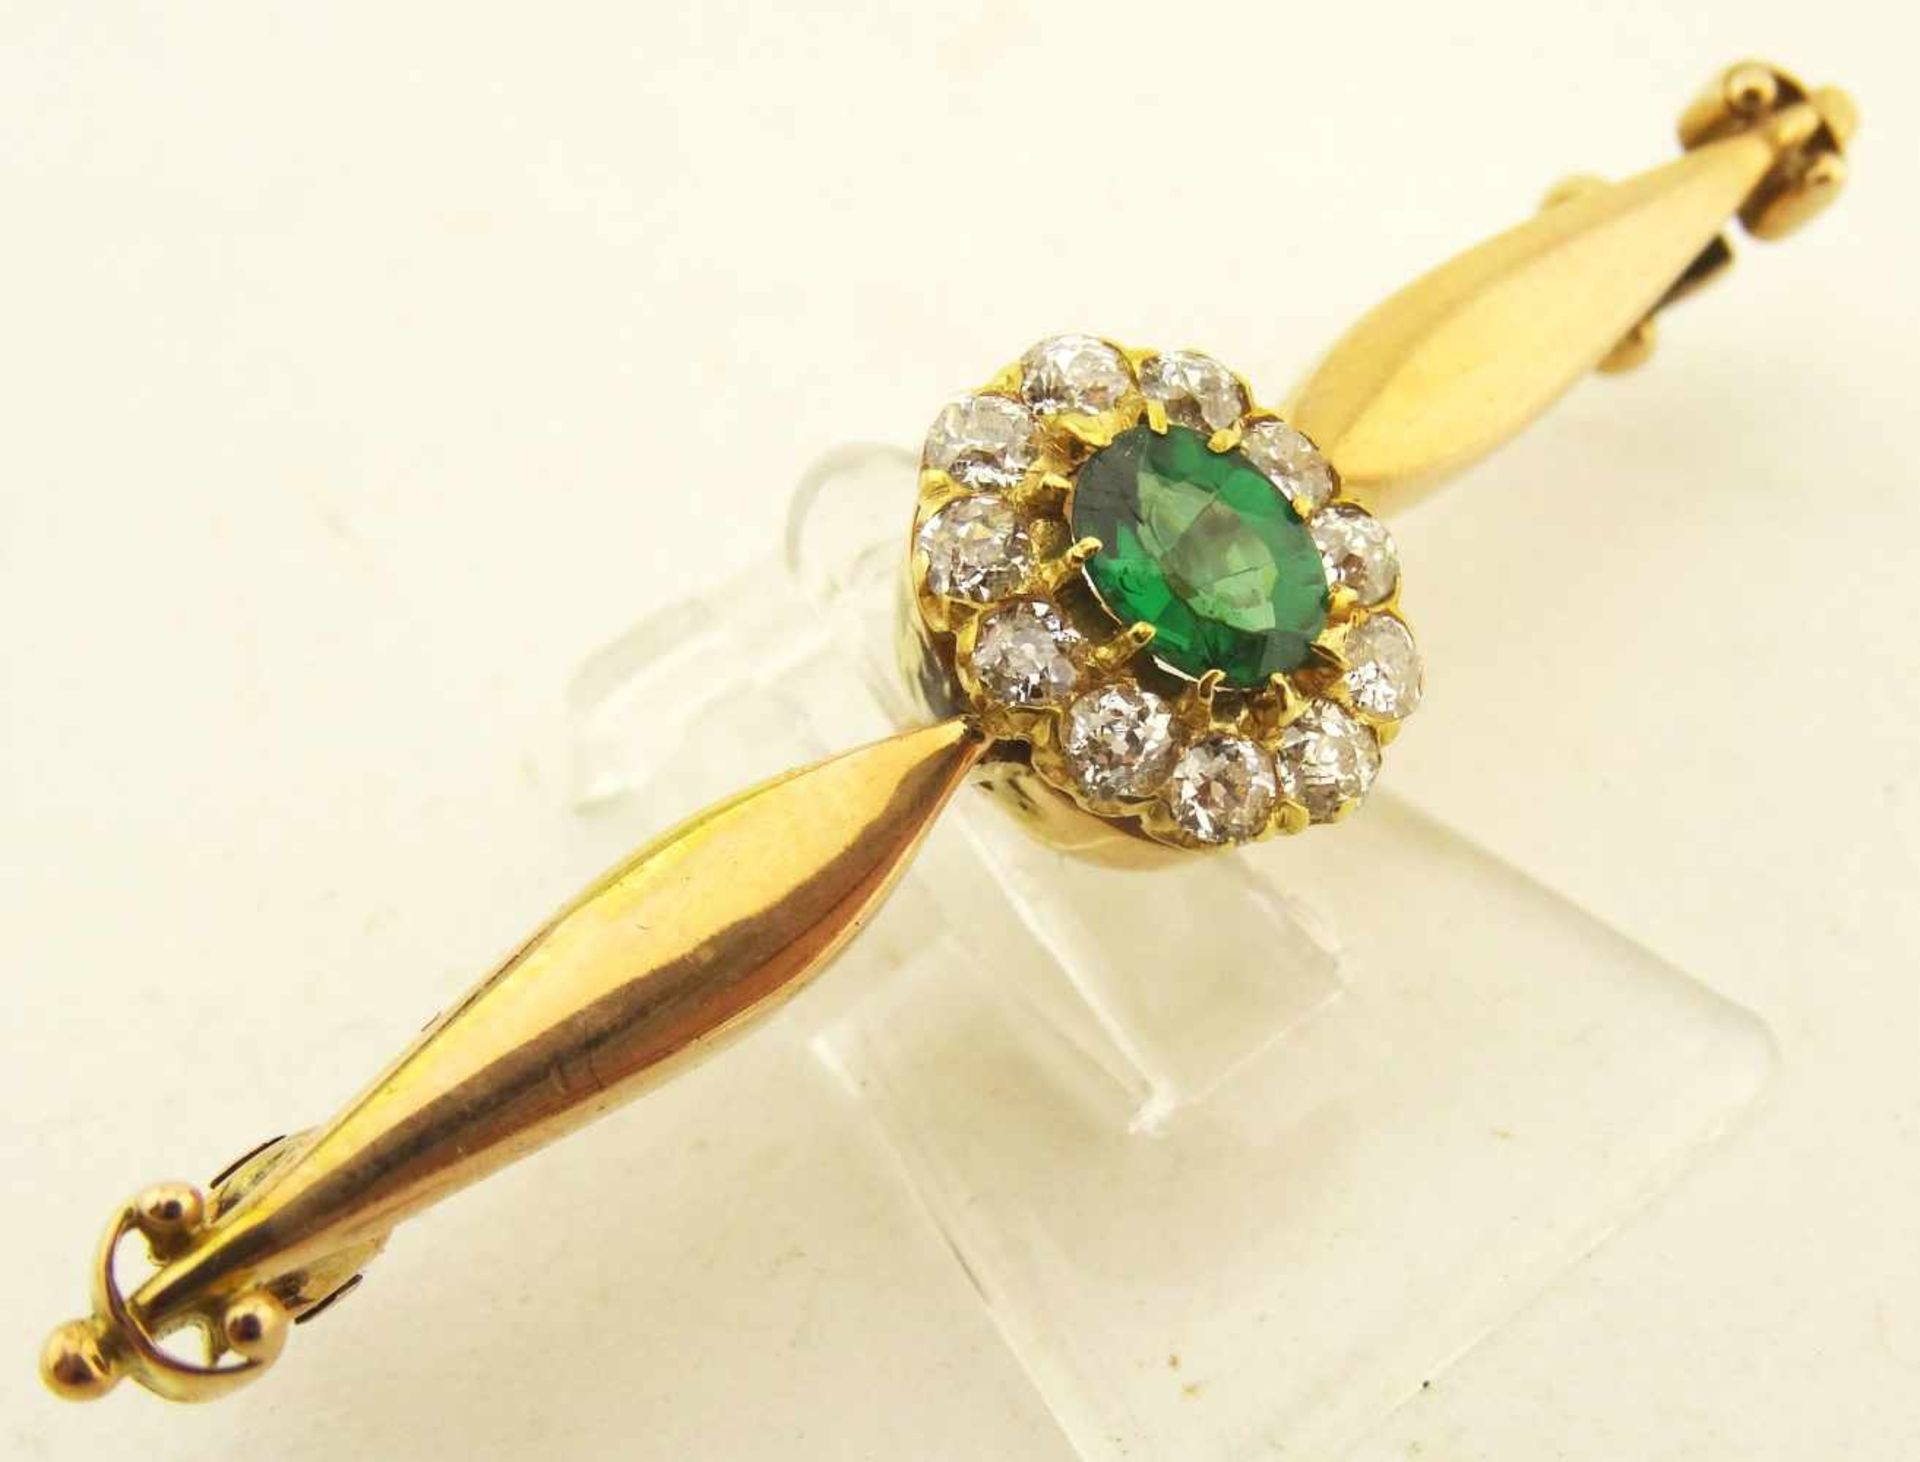 Nadel Diamant und wohl Smaragd 585 Gold ges. Länge 47mm, Diamanten zus. ca. 0,22ct., der grüne Stein - Bild 2 aus 3